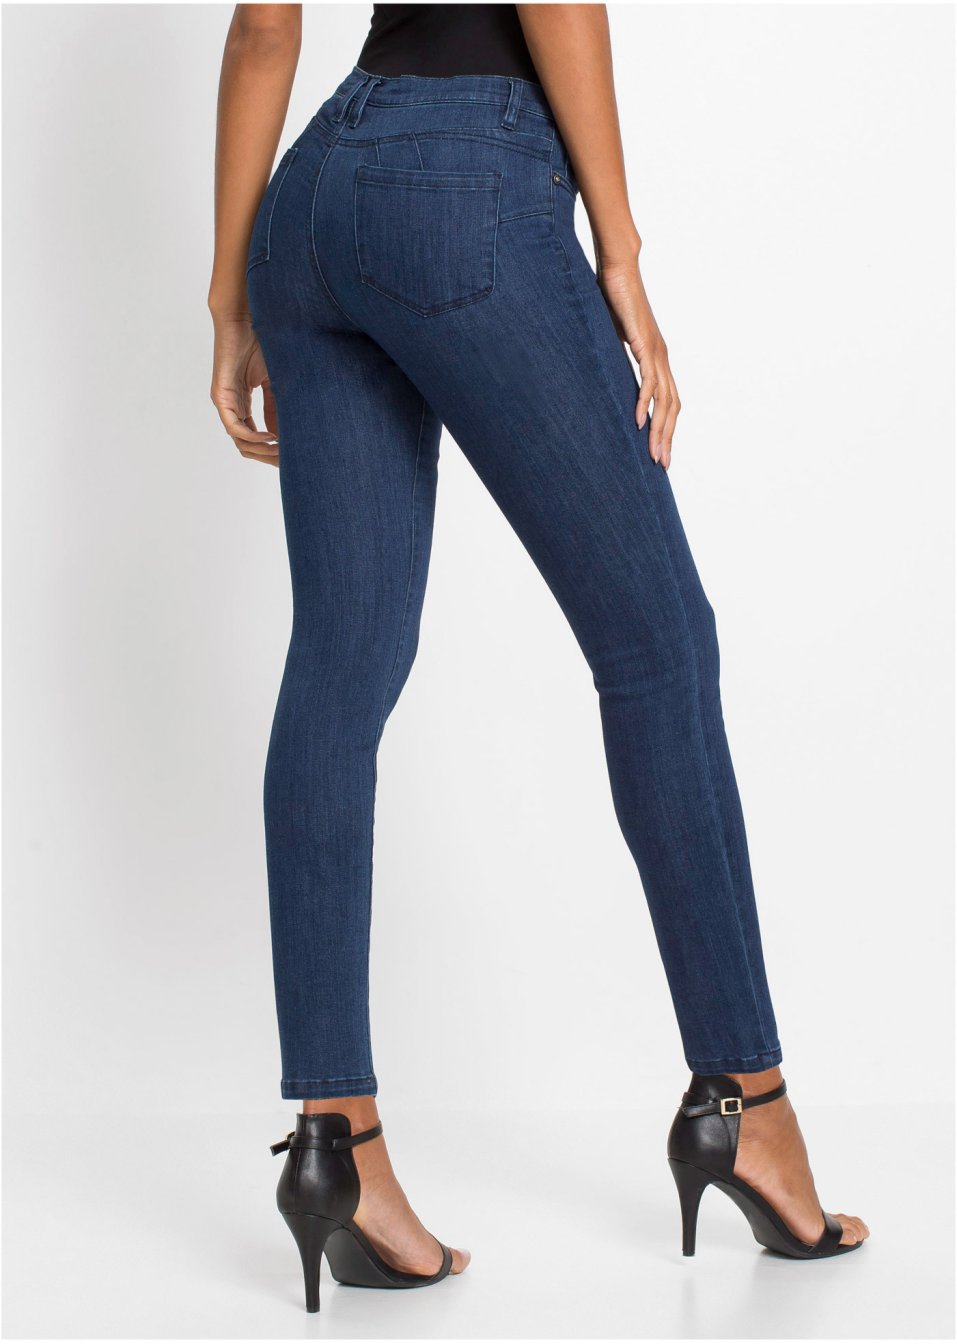 Push-Up-Jeans blue stone - Damen - BODYFLIRT boutique - bonprix.de